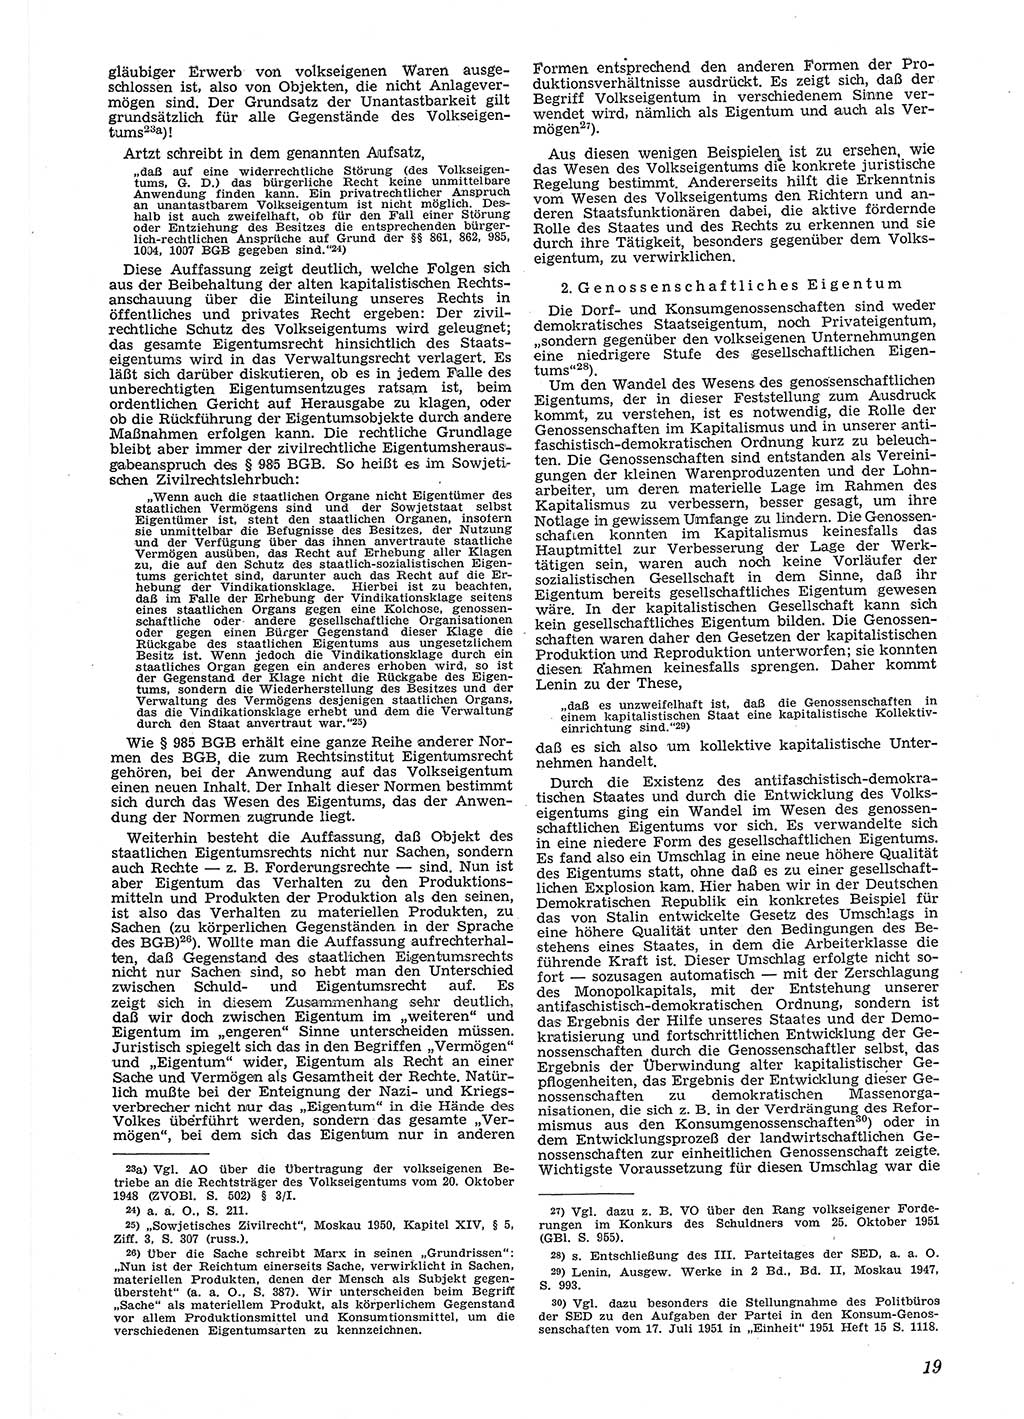 Neue Justiz (NJ), Zeitschrift für Recht und Rechtswissenschaft [Deutsche Demokratische Republik (DDR)], 6. Jahrgang 1952, Seite 19 (NJ DDR 1952, S. 19)